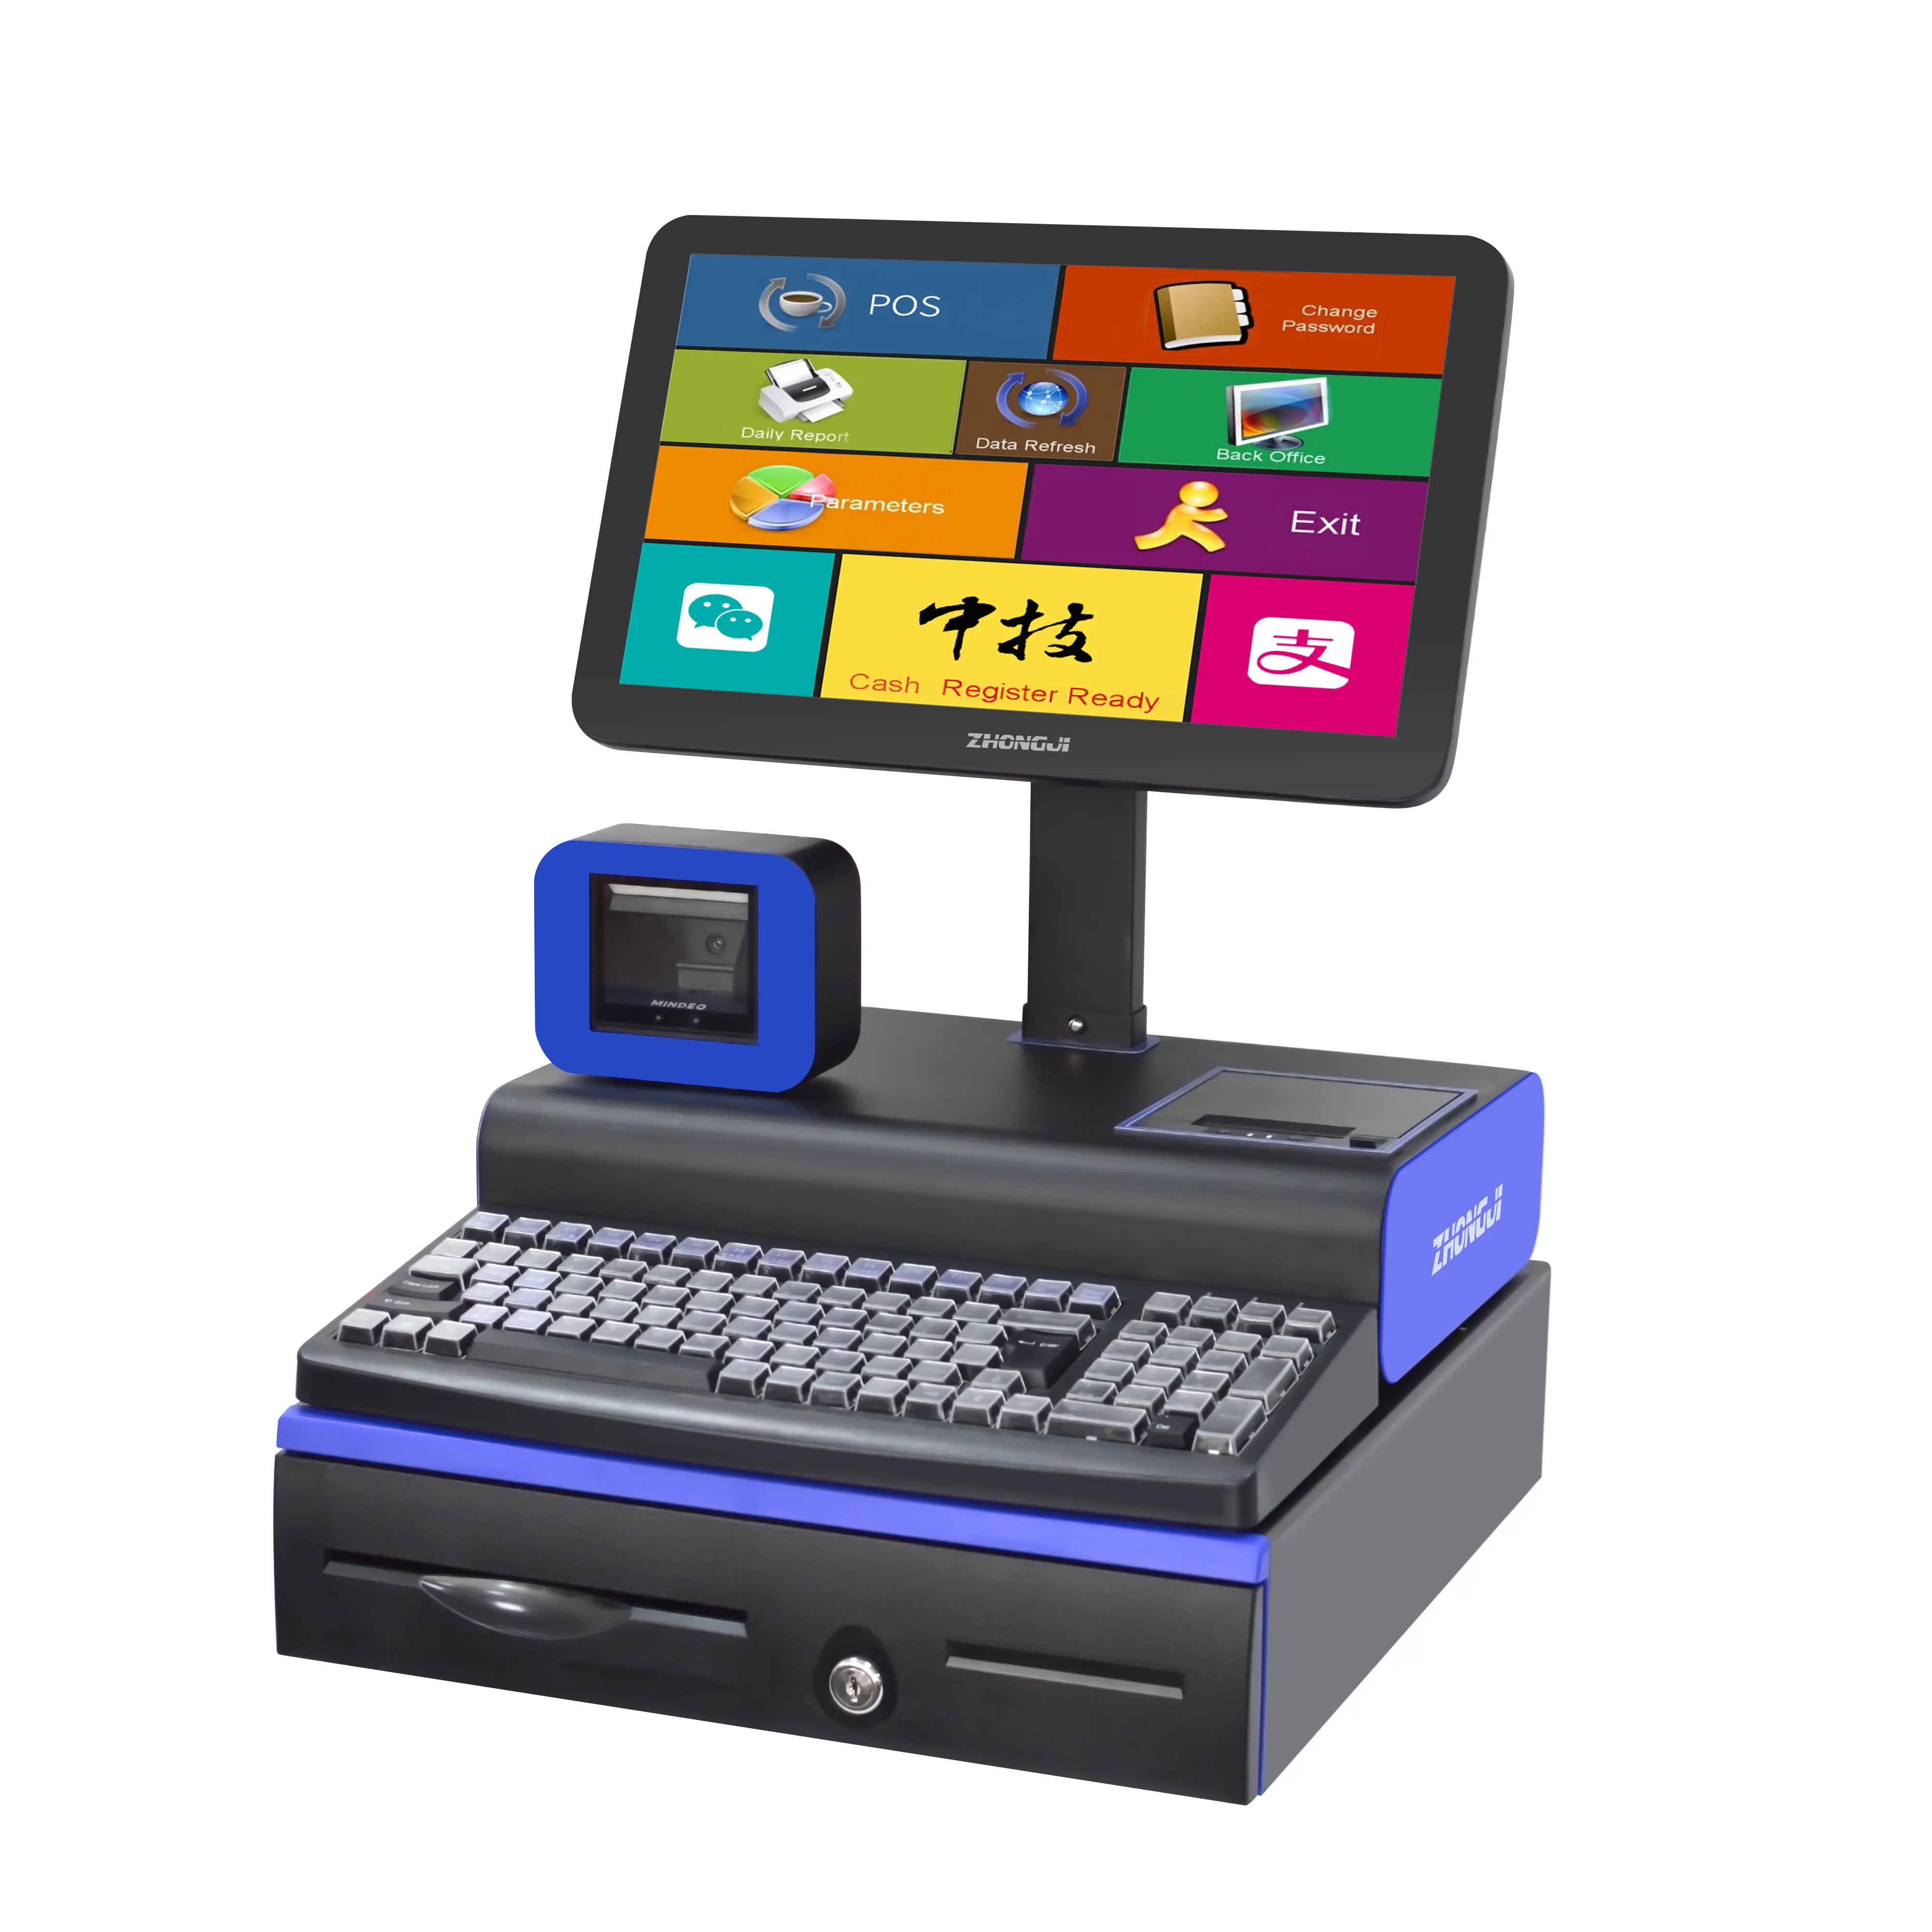 Supporto terminale Pos per negozio al dettaglio programma Software per punti vendita Online cassiere completo stampante e Scanner completi